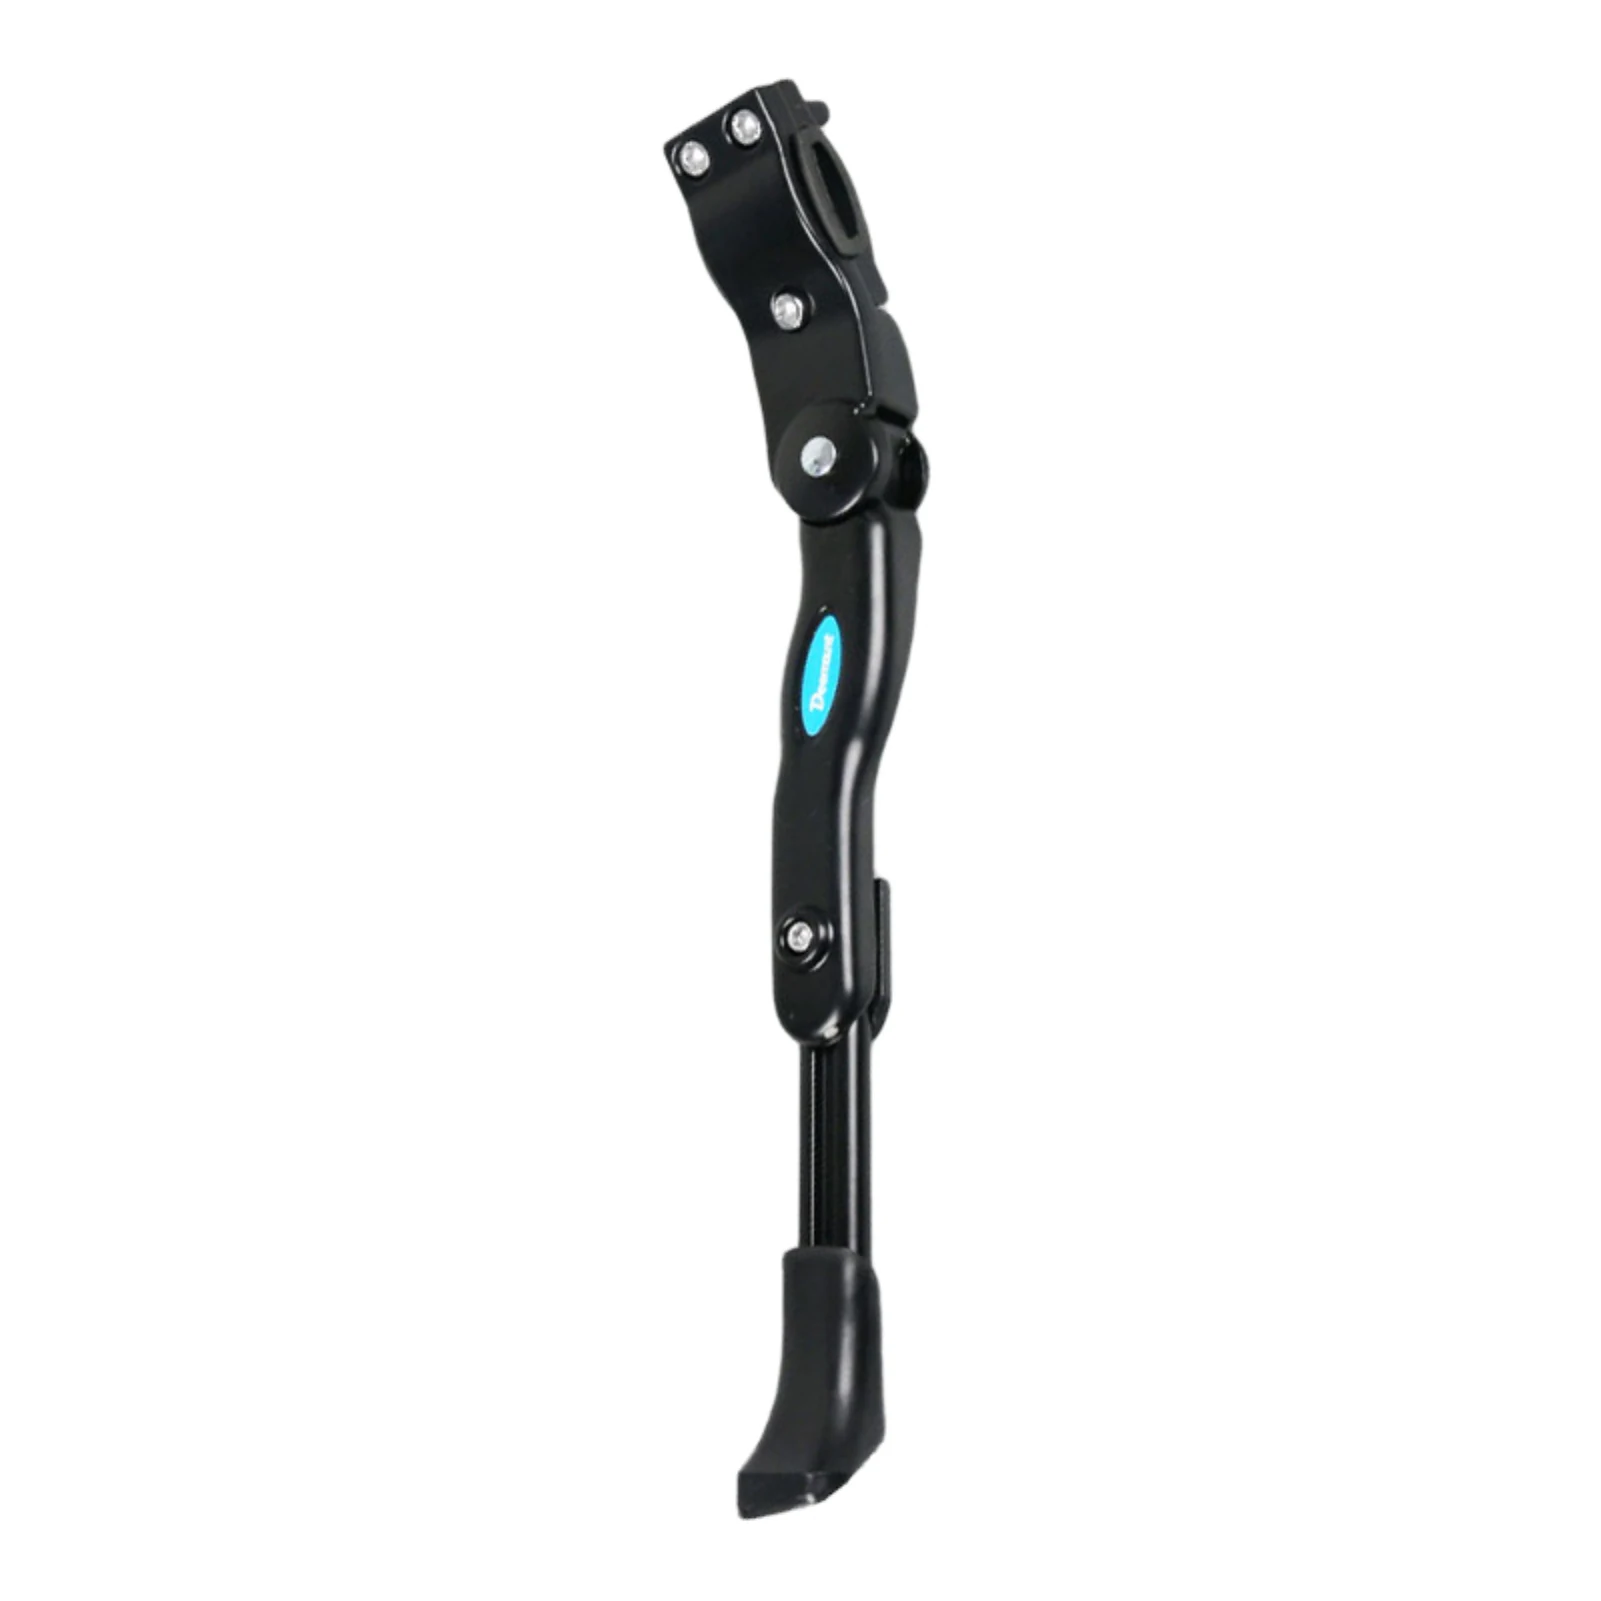  Боковой кронштейн для ног Подножки Хороший защитный эффект Предотвращение смещения Нижняя противоскользящая втулка Опорная рама5